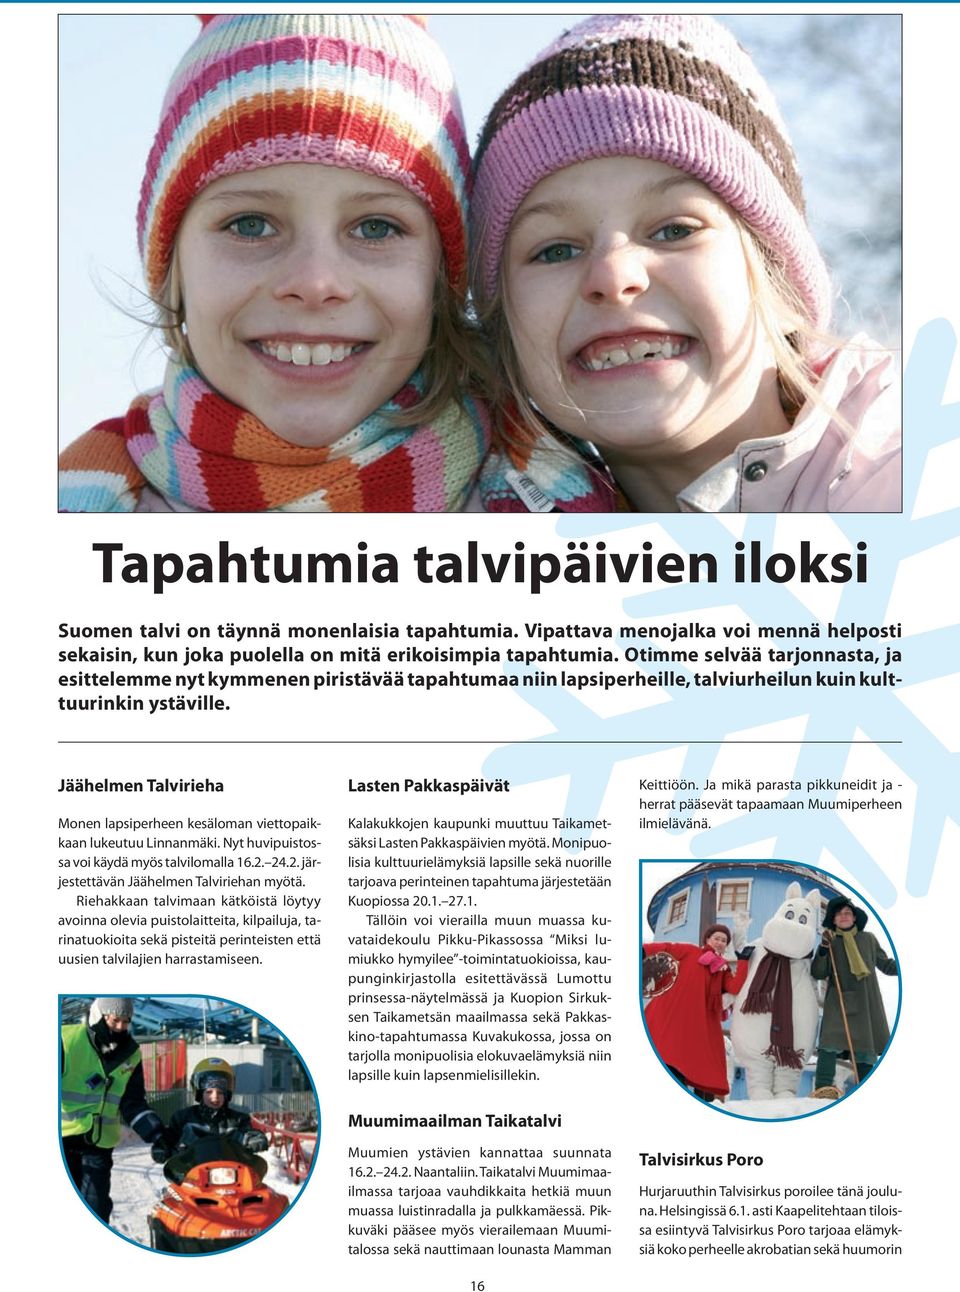 Jäähelmen Talvirieha Monen lapsiperheen kesäloman viettopaikkaan lukeutuu Linnanmäki. Nyt huvipuistossa voi käydä myös talvilomalla 16.2. 24.2. järjestettävän Jäähelmen Talviriehan myötä.